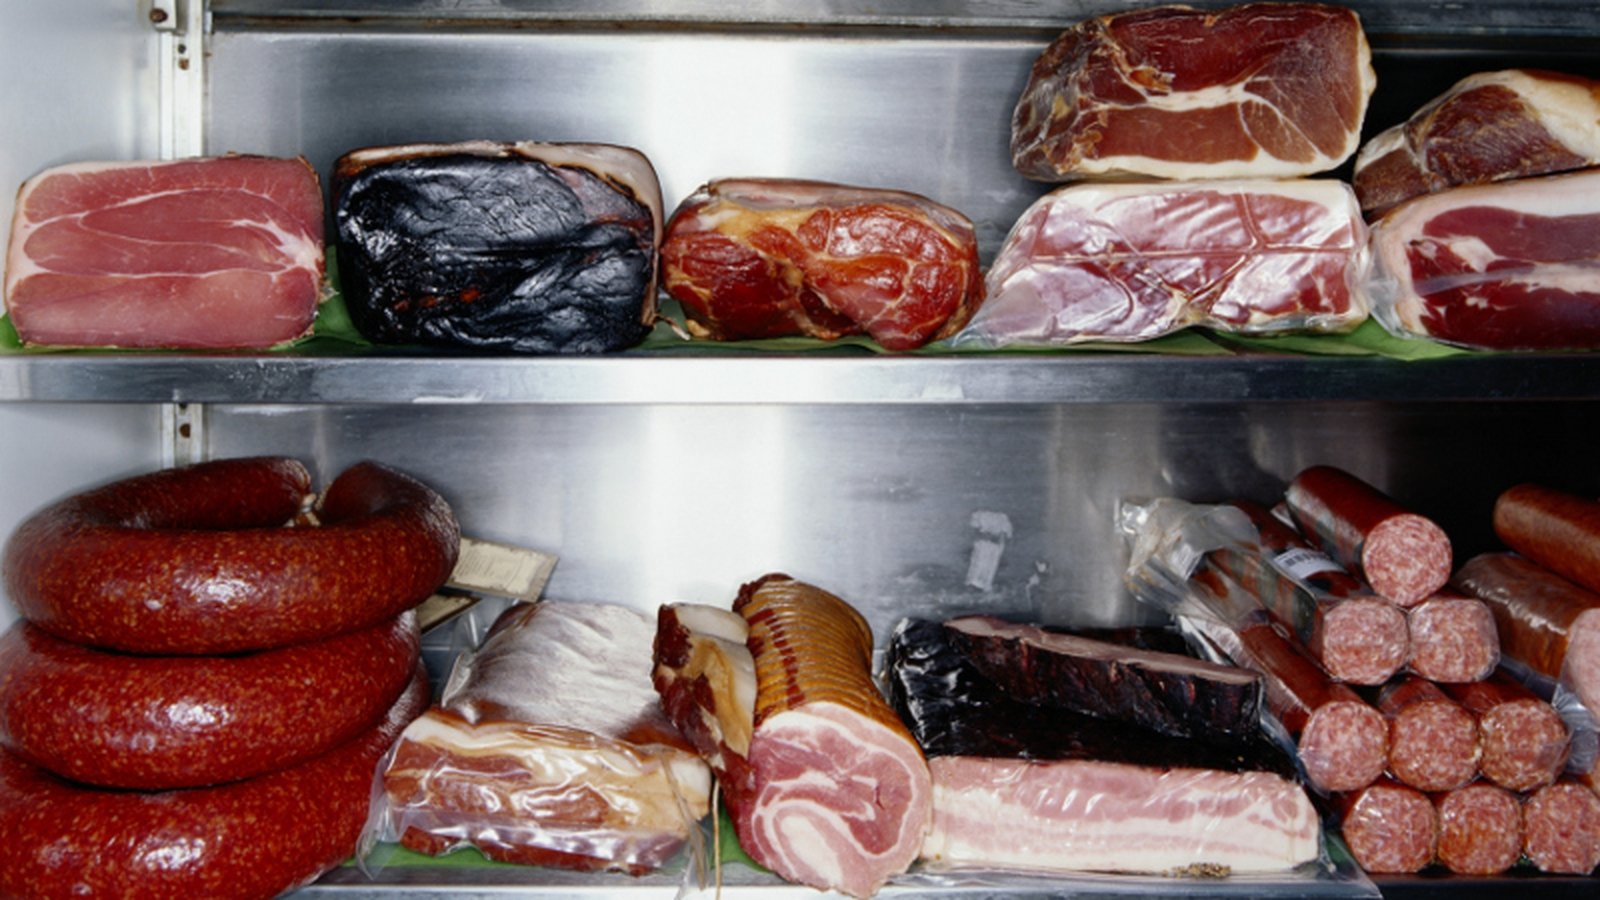 Можно замораживать вареную колбасу. Жолодильник для хранения мясо. Колбаса в холодильнике. Холодильник полный колбасы. Холодильник полный мяса.